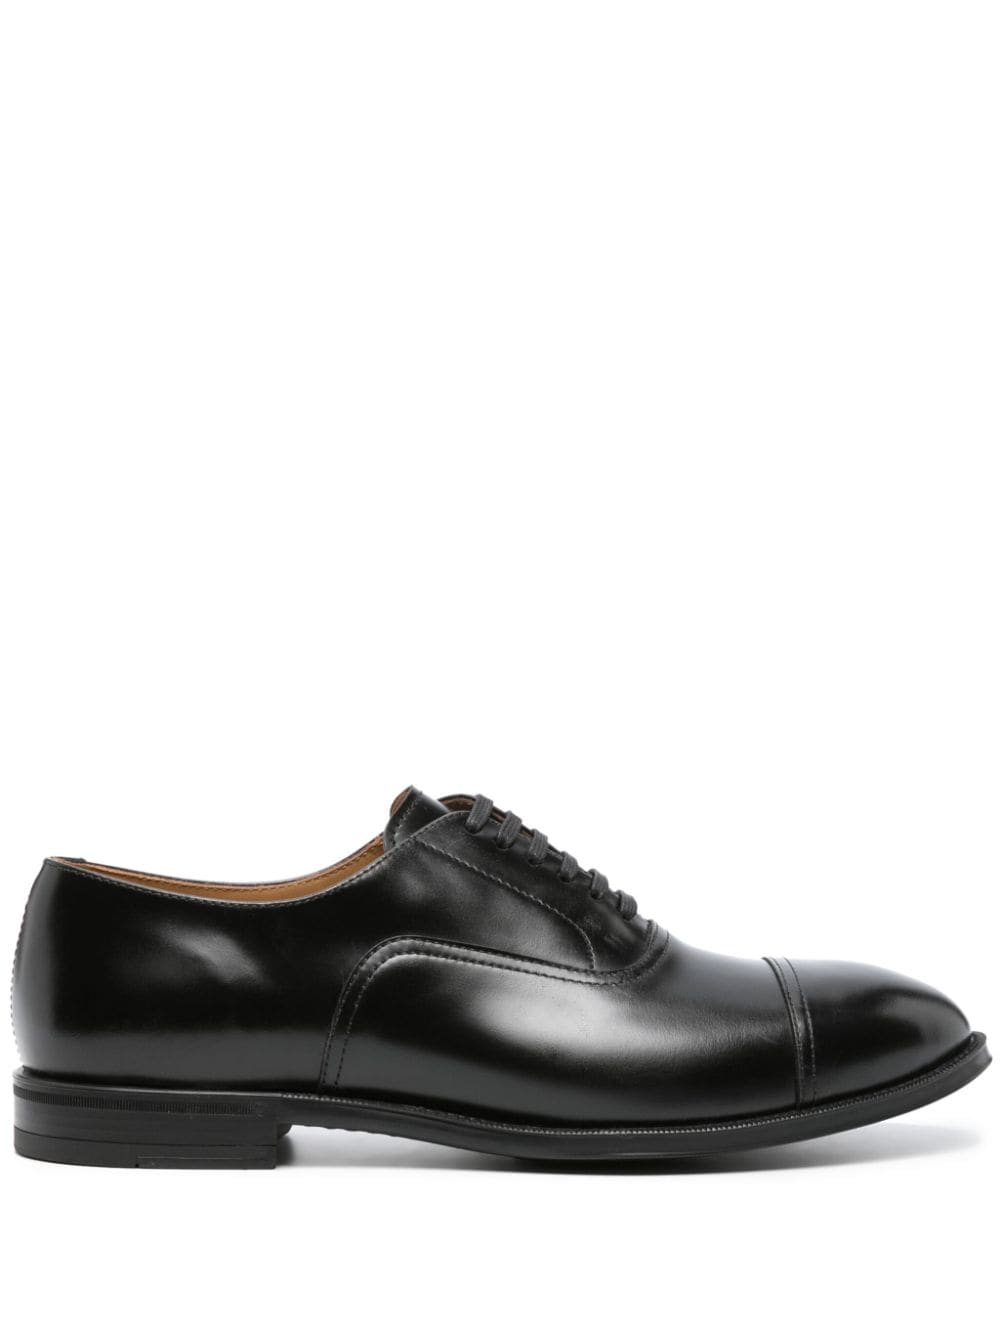 Henderson Baracco almond-toe leather Oxford shoes - Black von Henderson Baracco